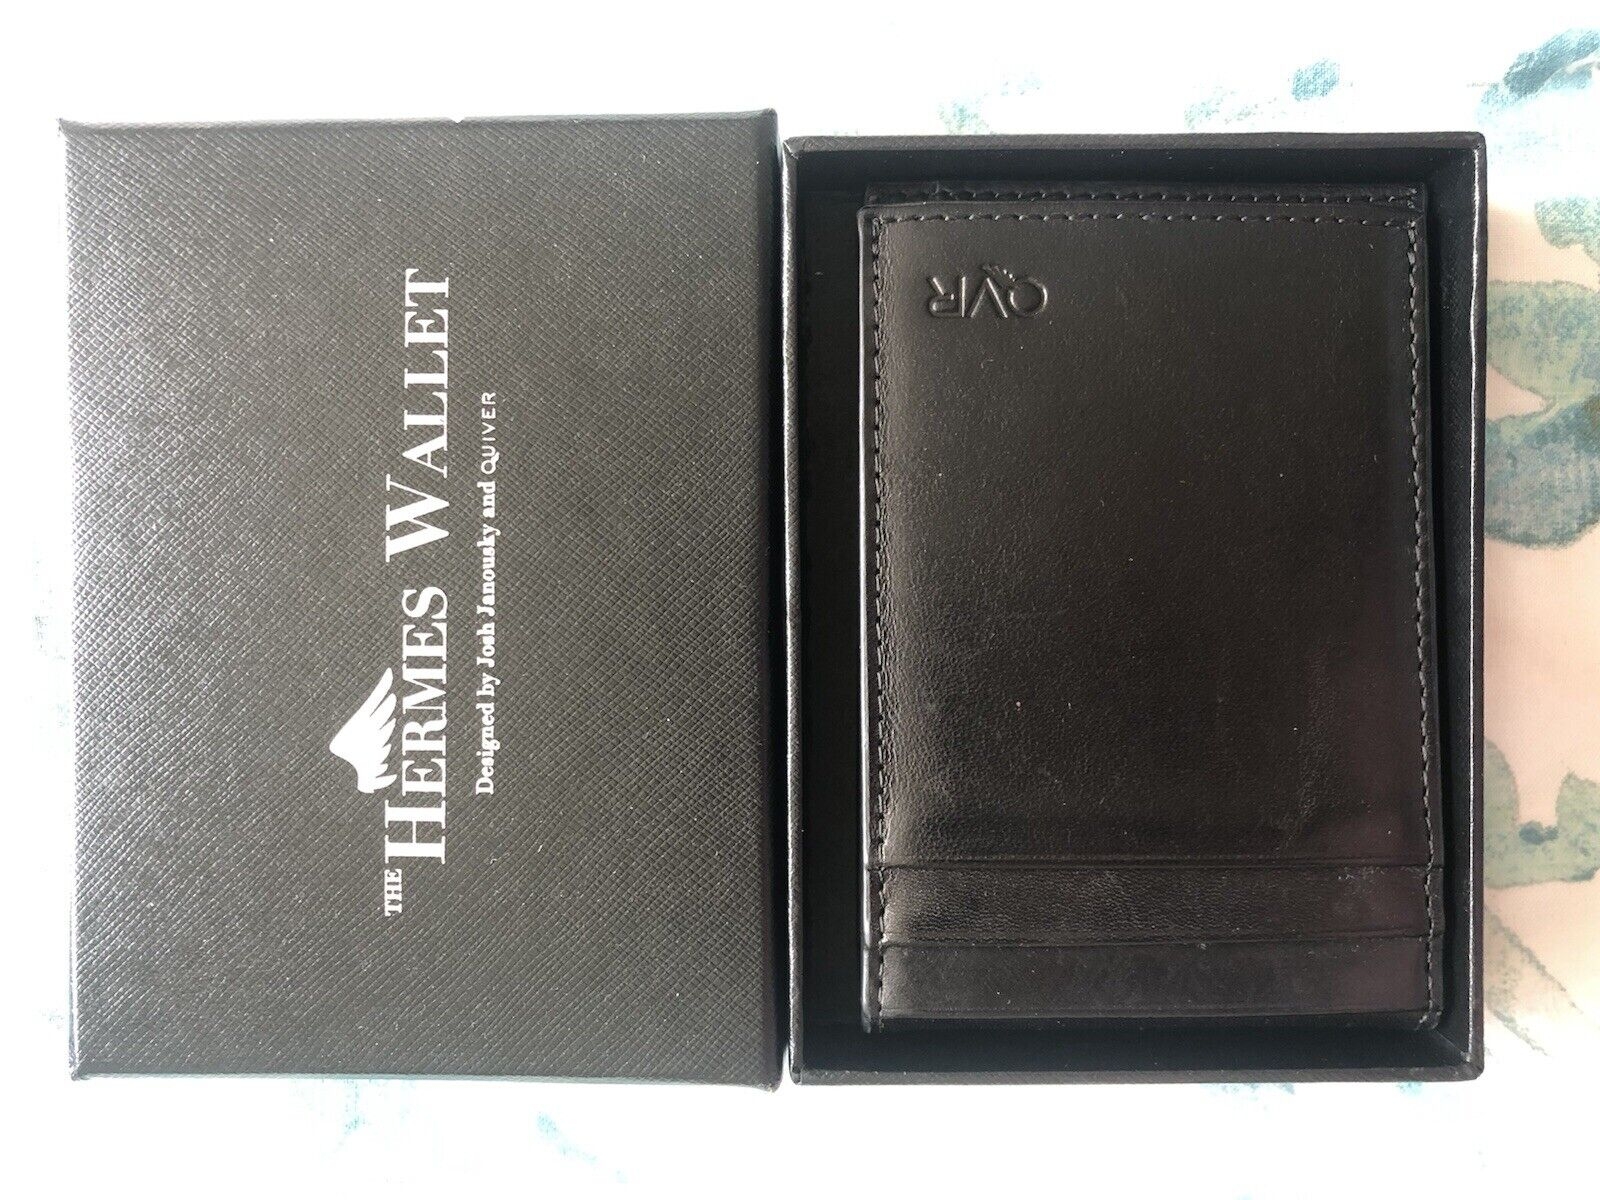 Hermes Wallet in box